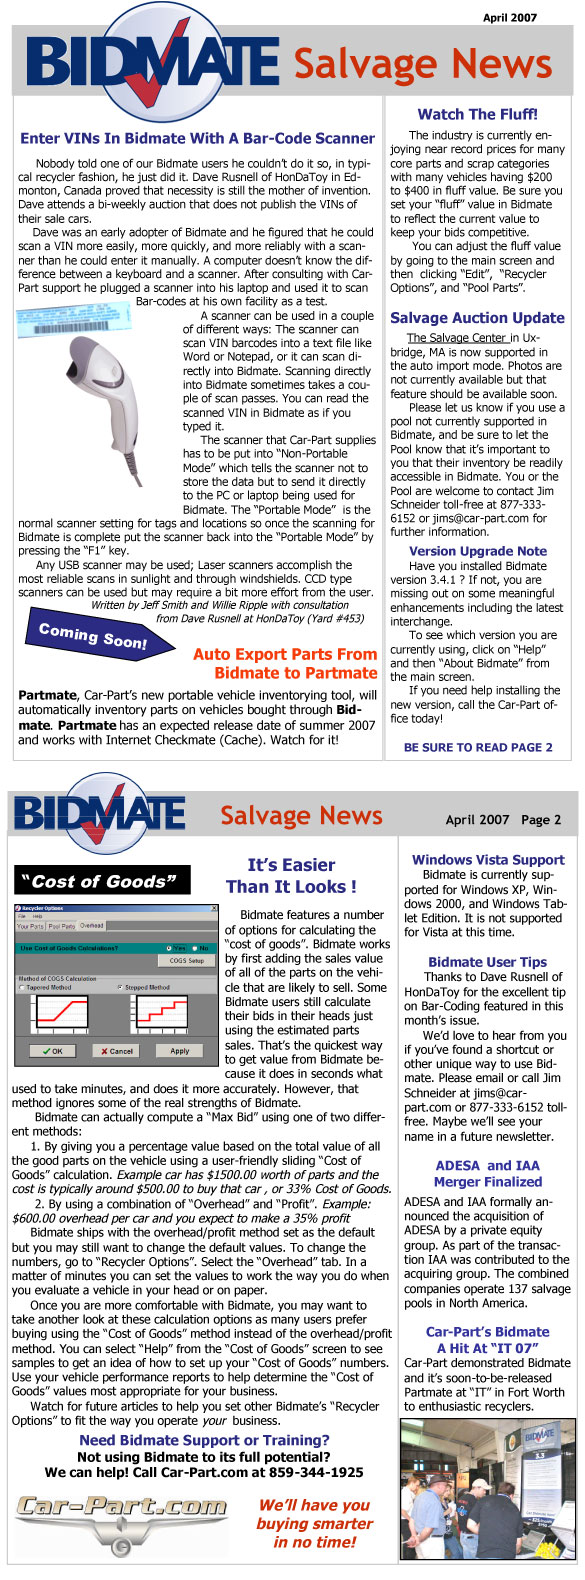 Bidmate Salvage News - April 2007